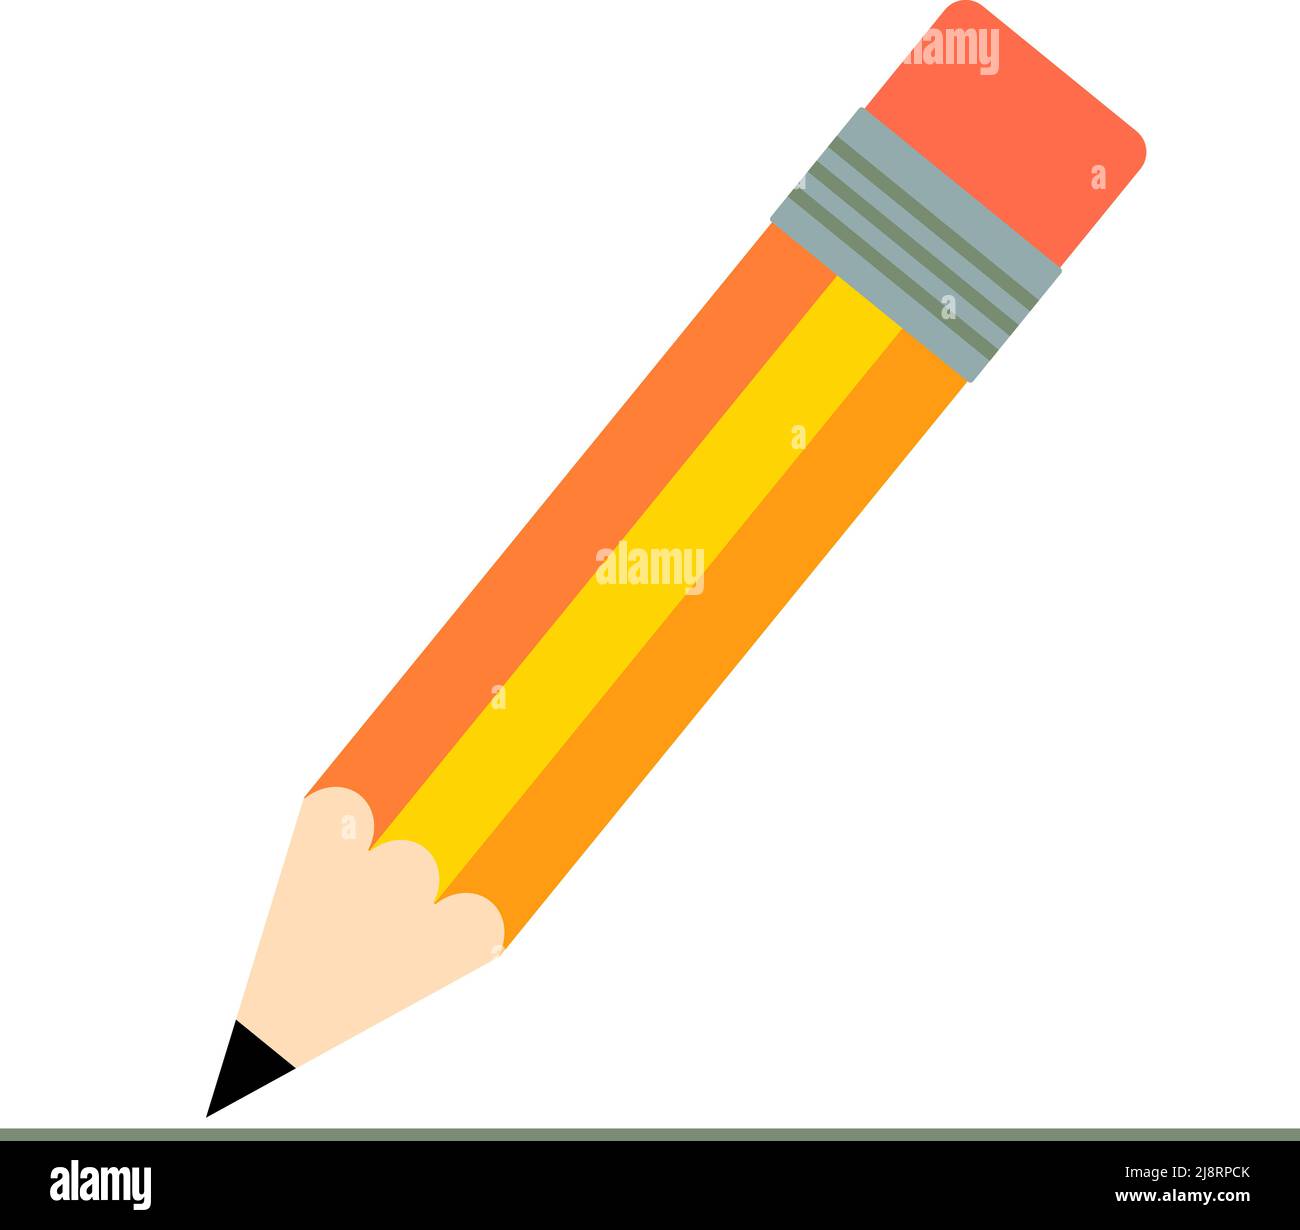 Einfache bunte Bleistift isoliert auf weißem Hintergrund, flache Design Vektor-Illustration Stock Vektor